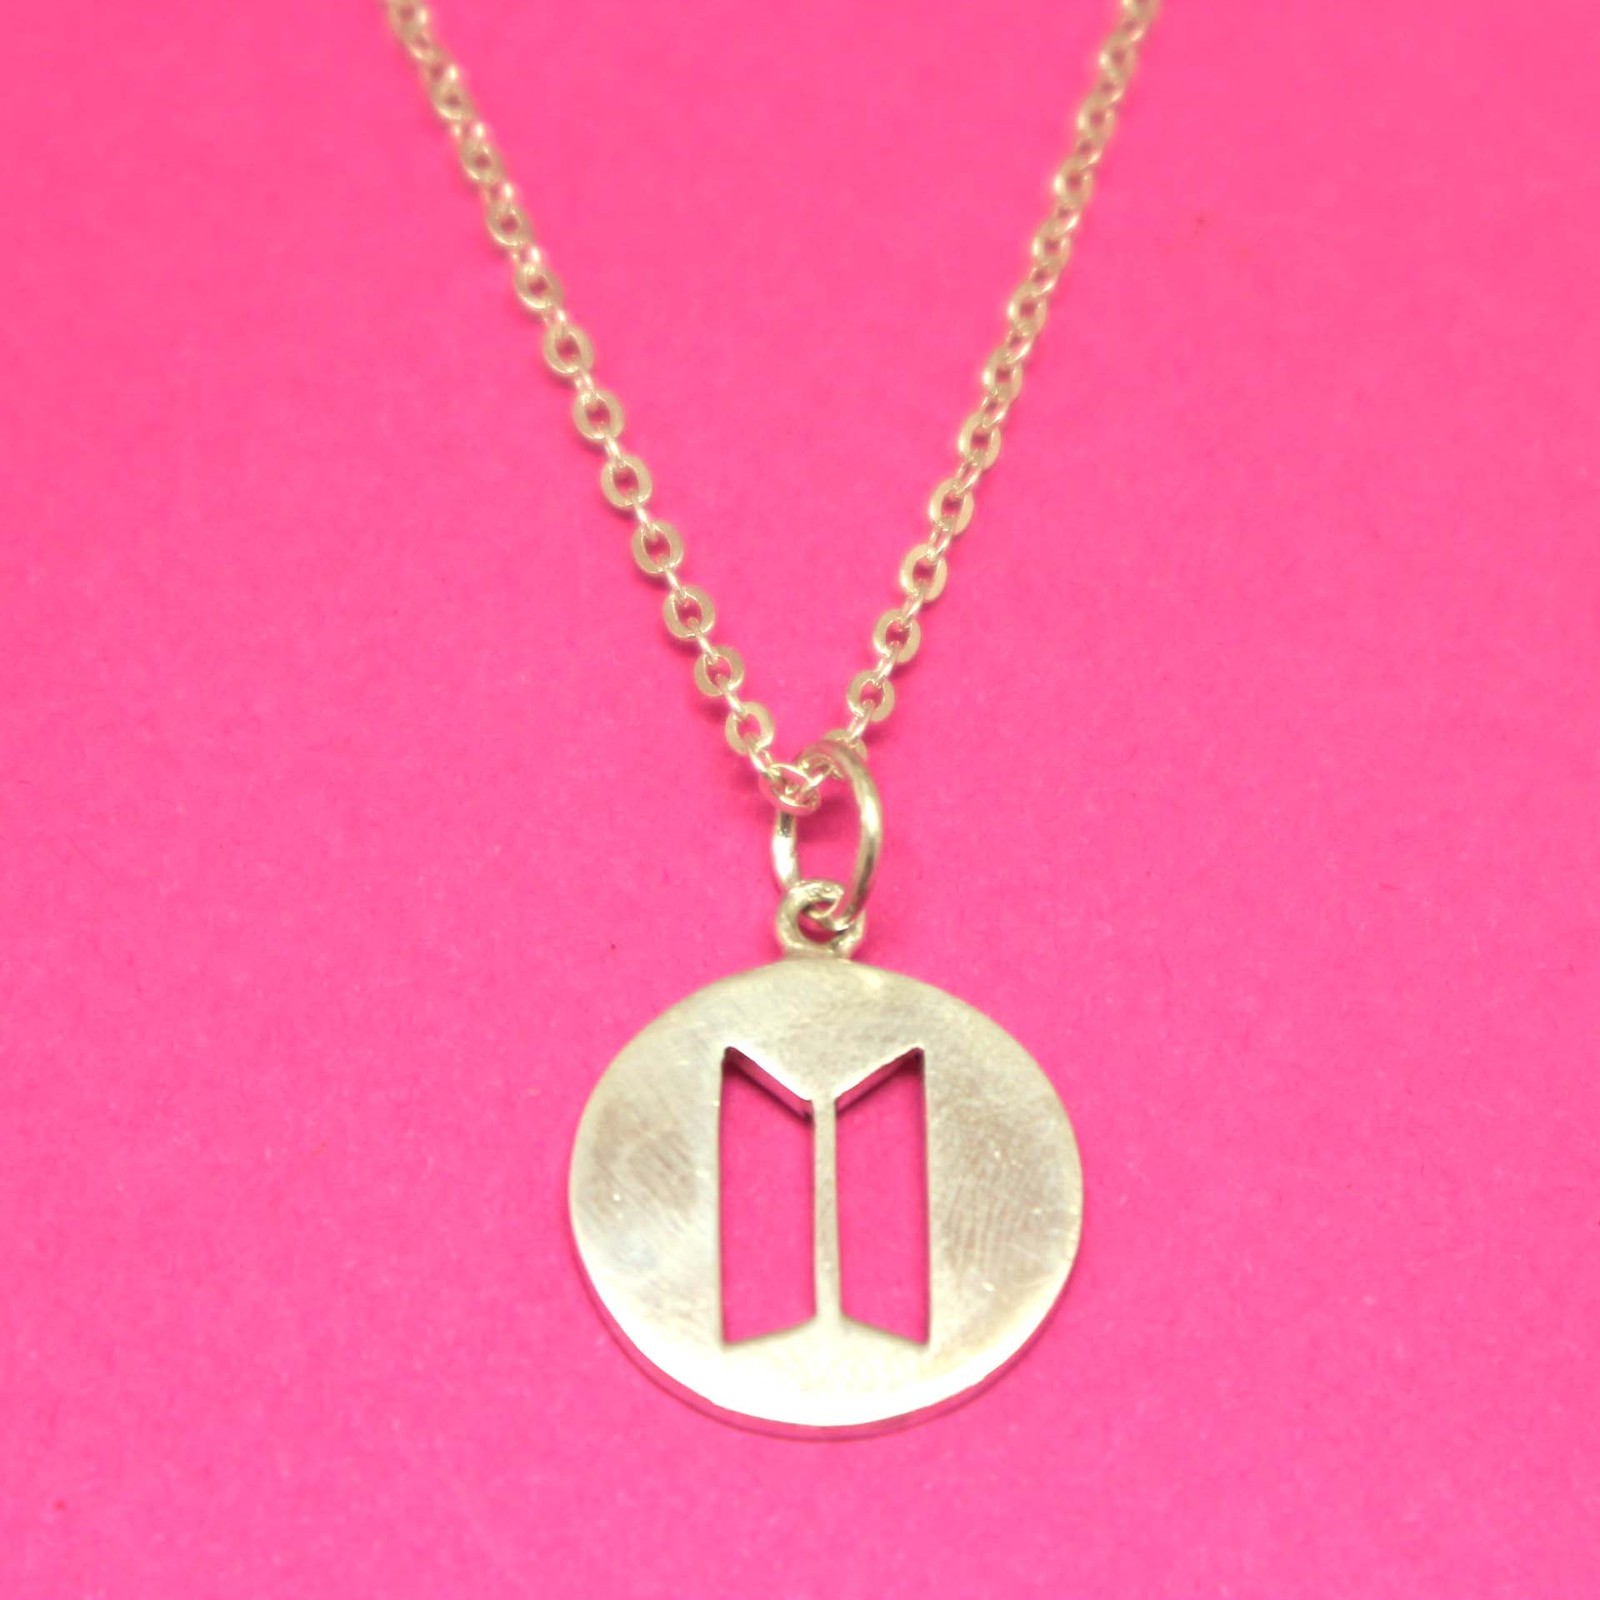 Handmade - 925 sterling silver bts emblem symbol hip hop rock necklace pendant